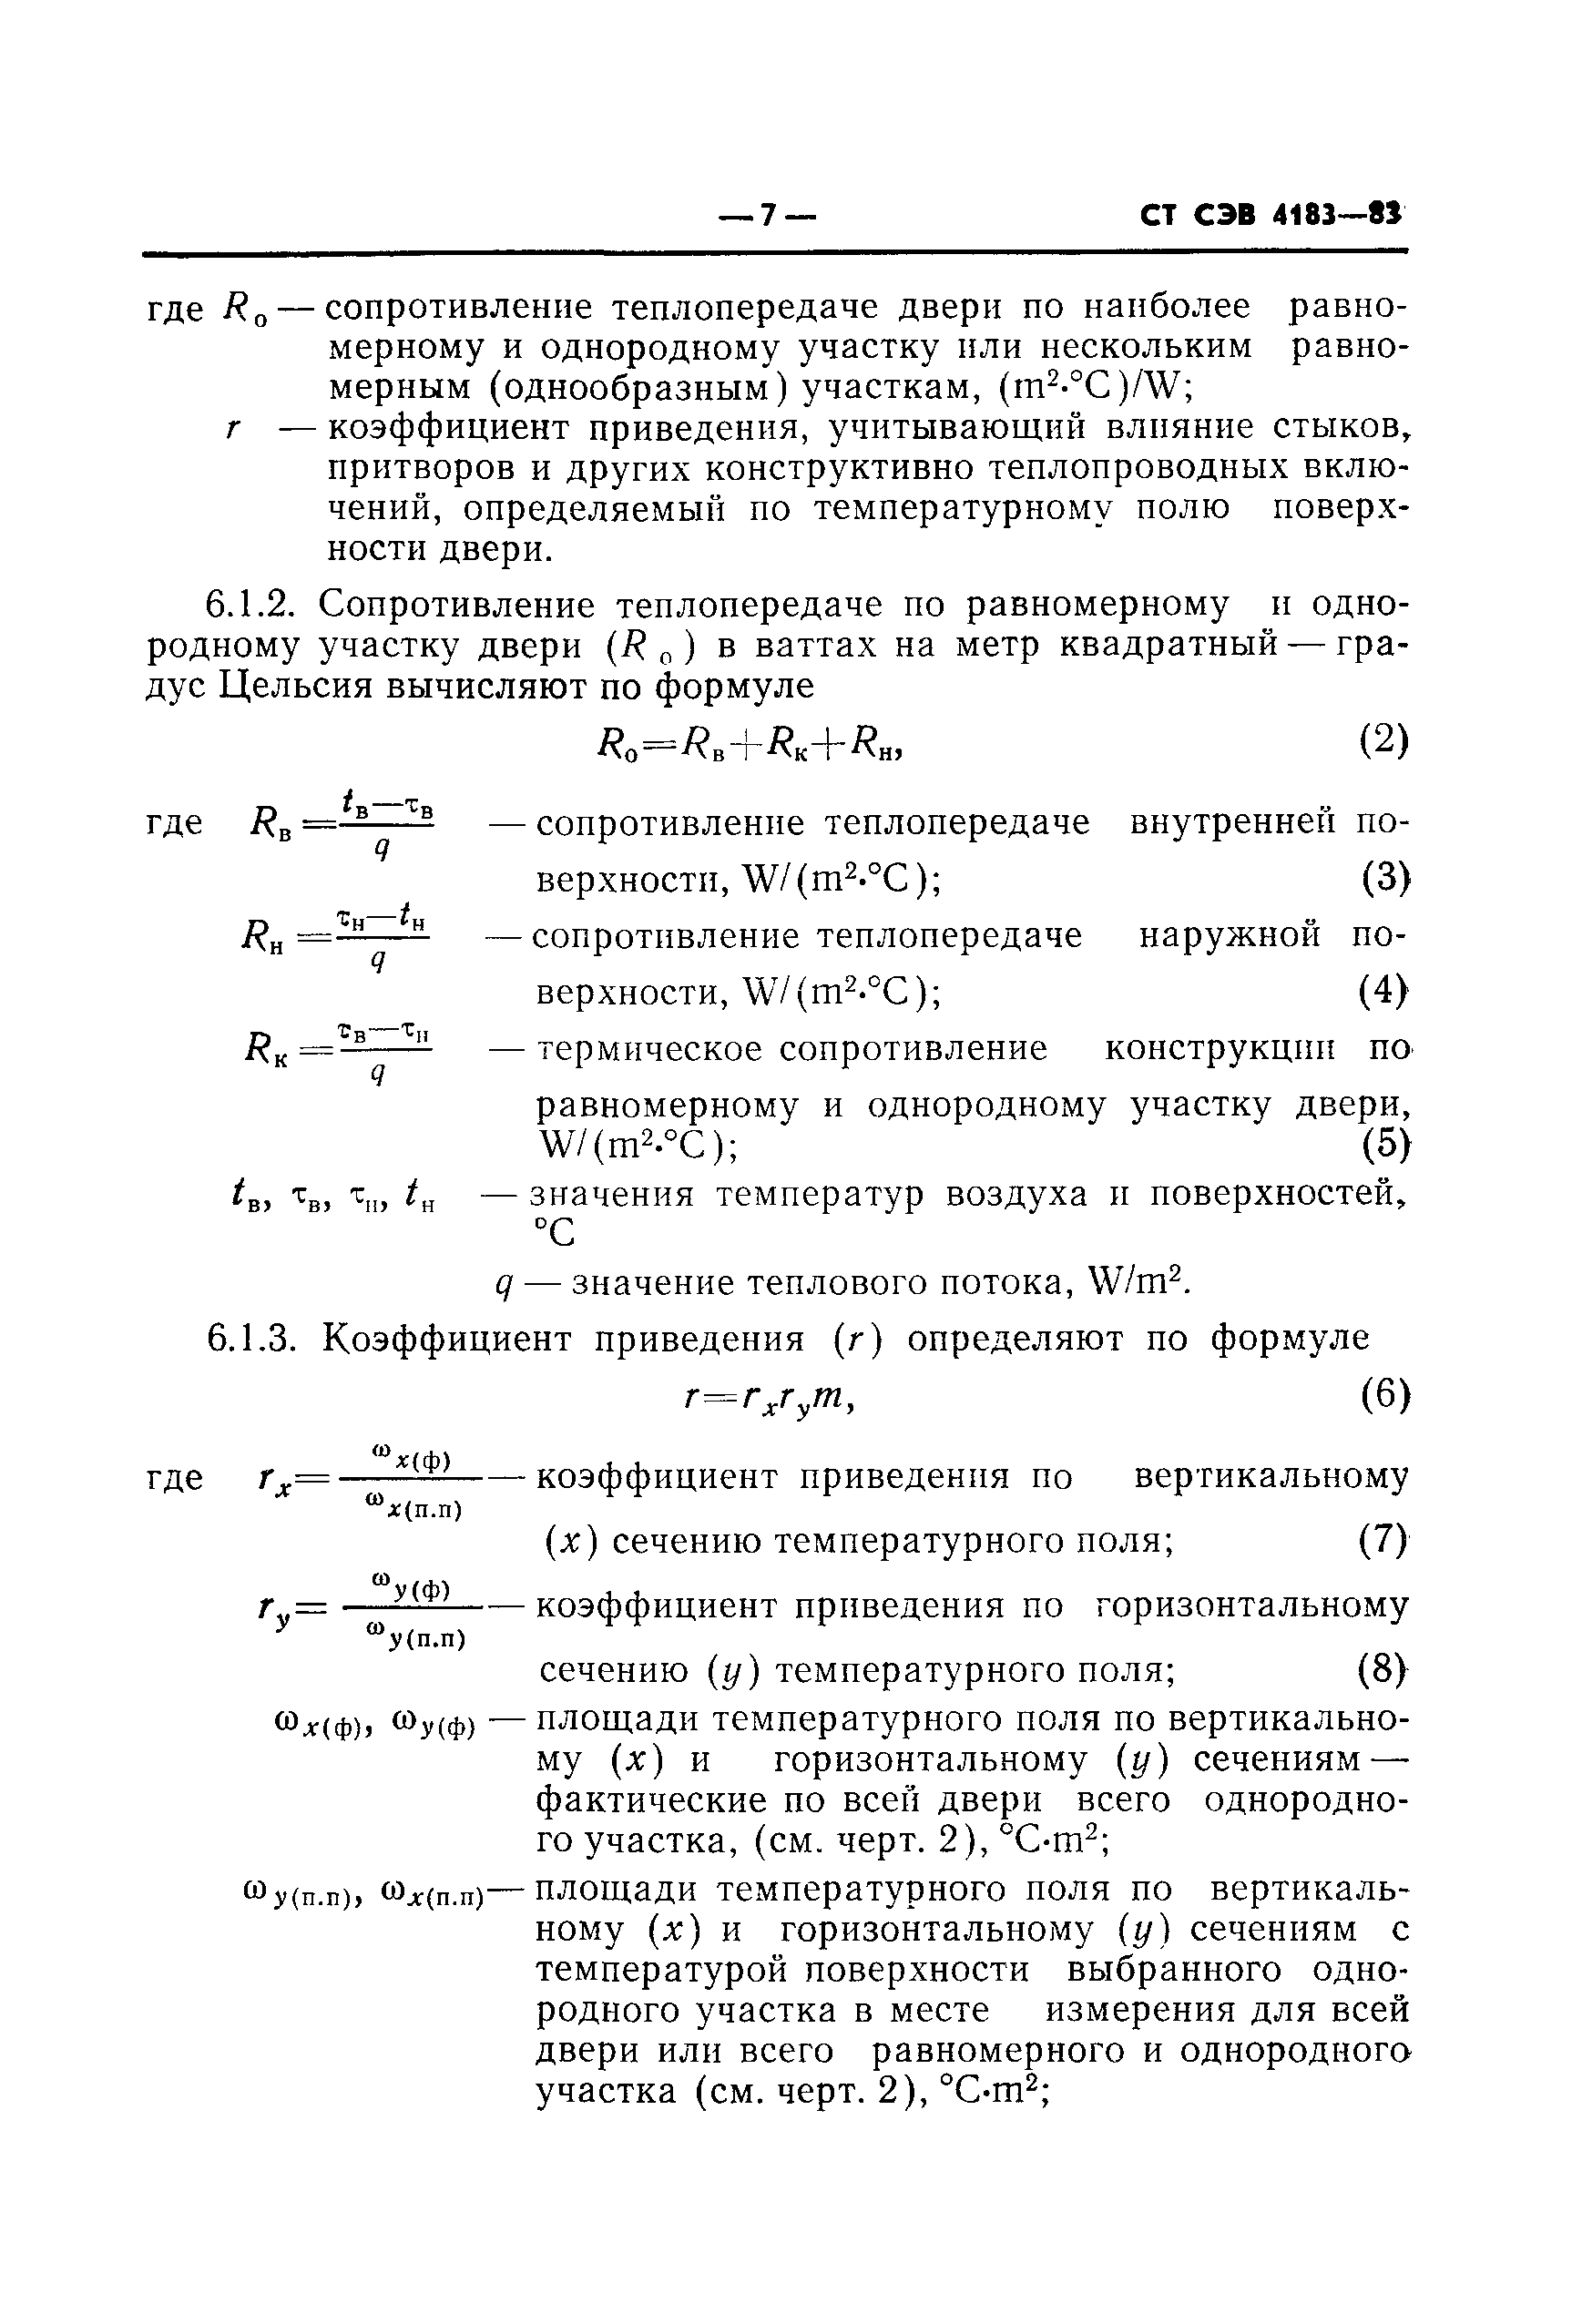 СТ СЭВ 4183-83